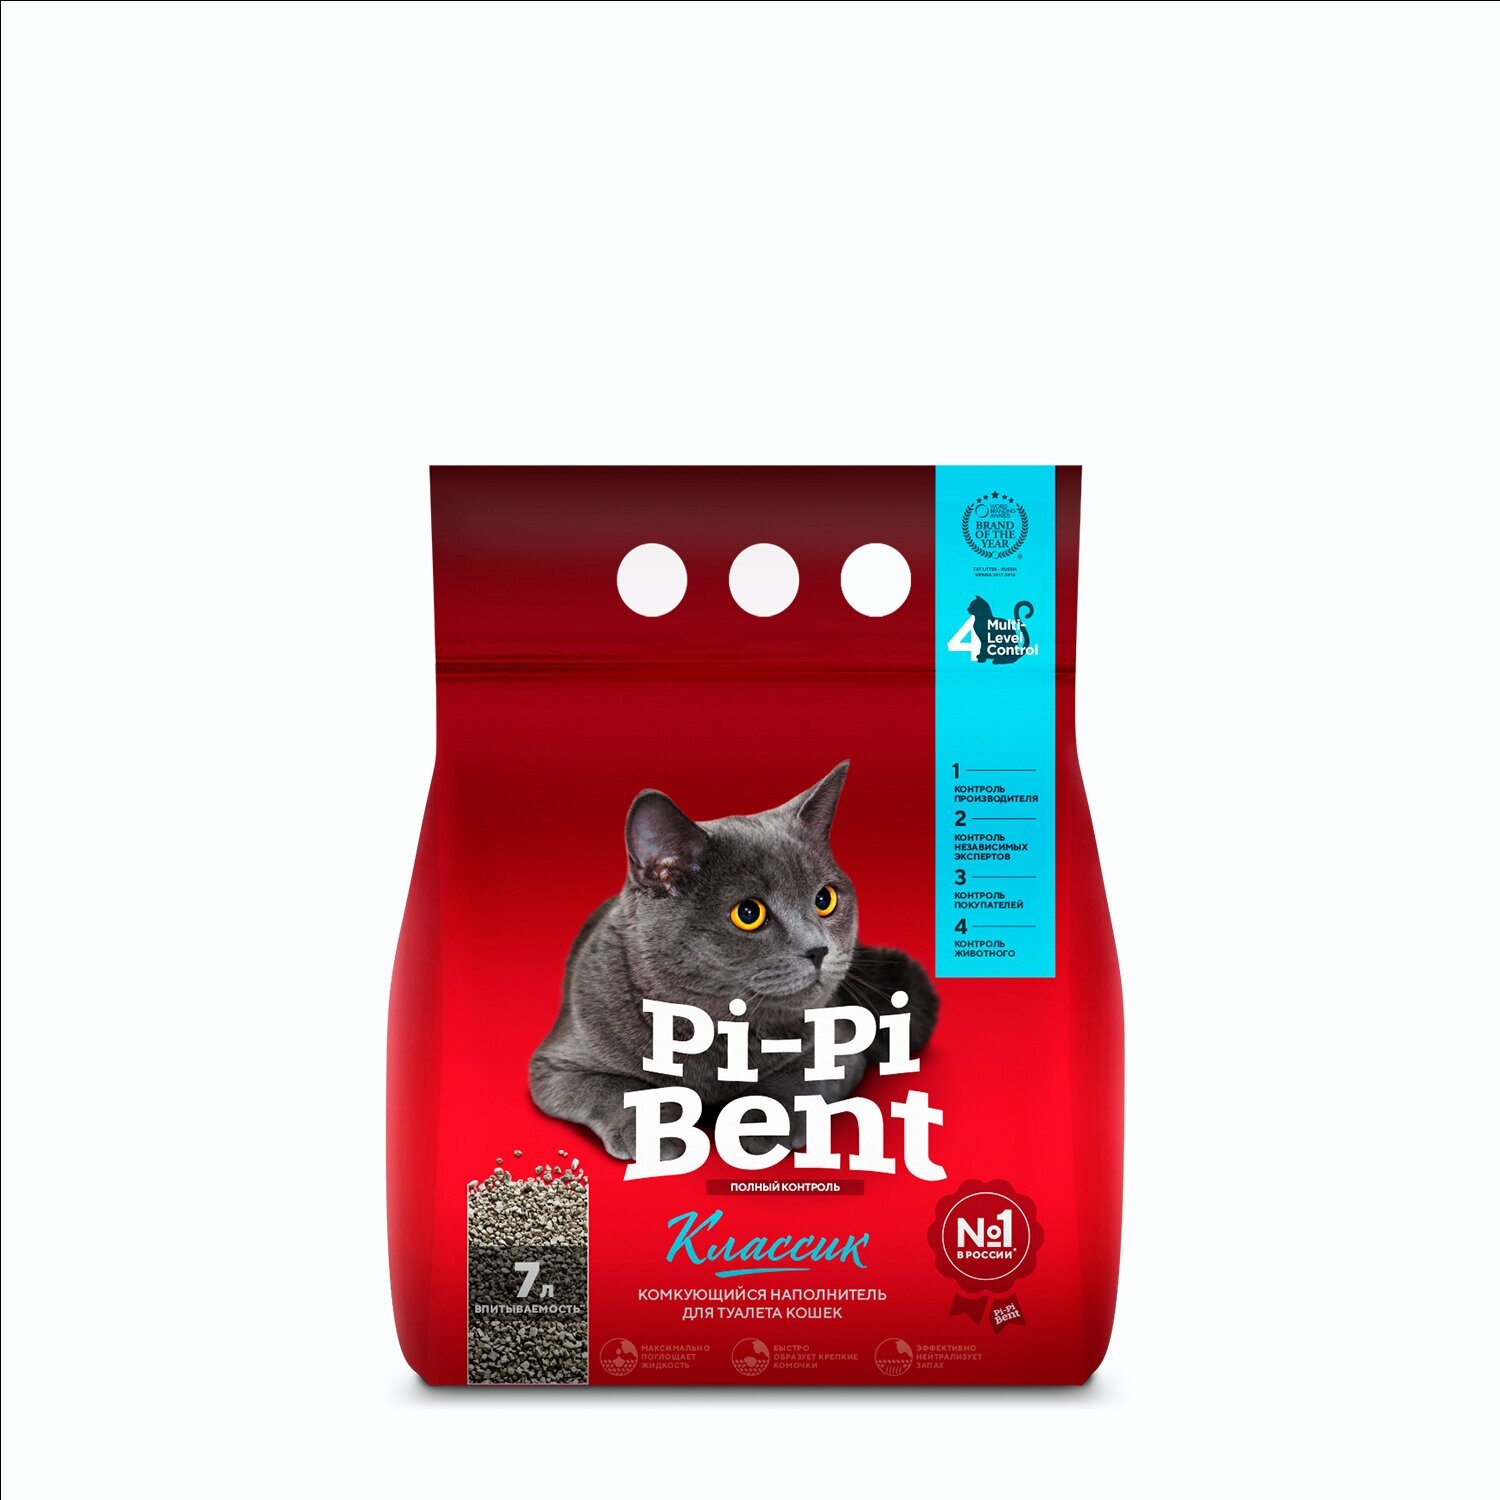 Наполнитель Pi-Pi Bent "Классик" комкующийся для кошек (п/э пакет) 3кг 7л